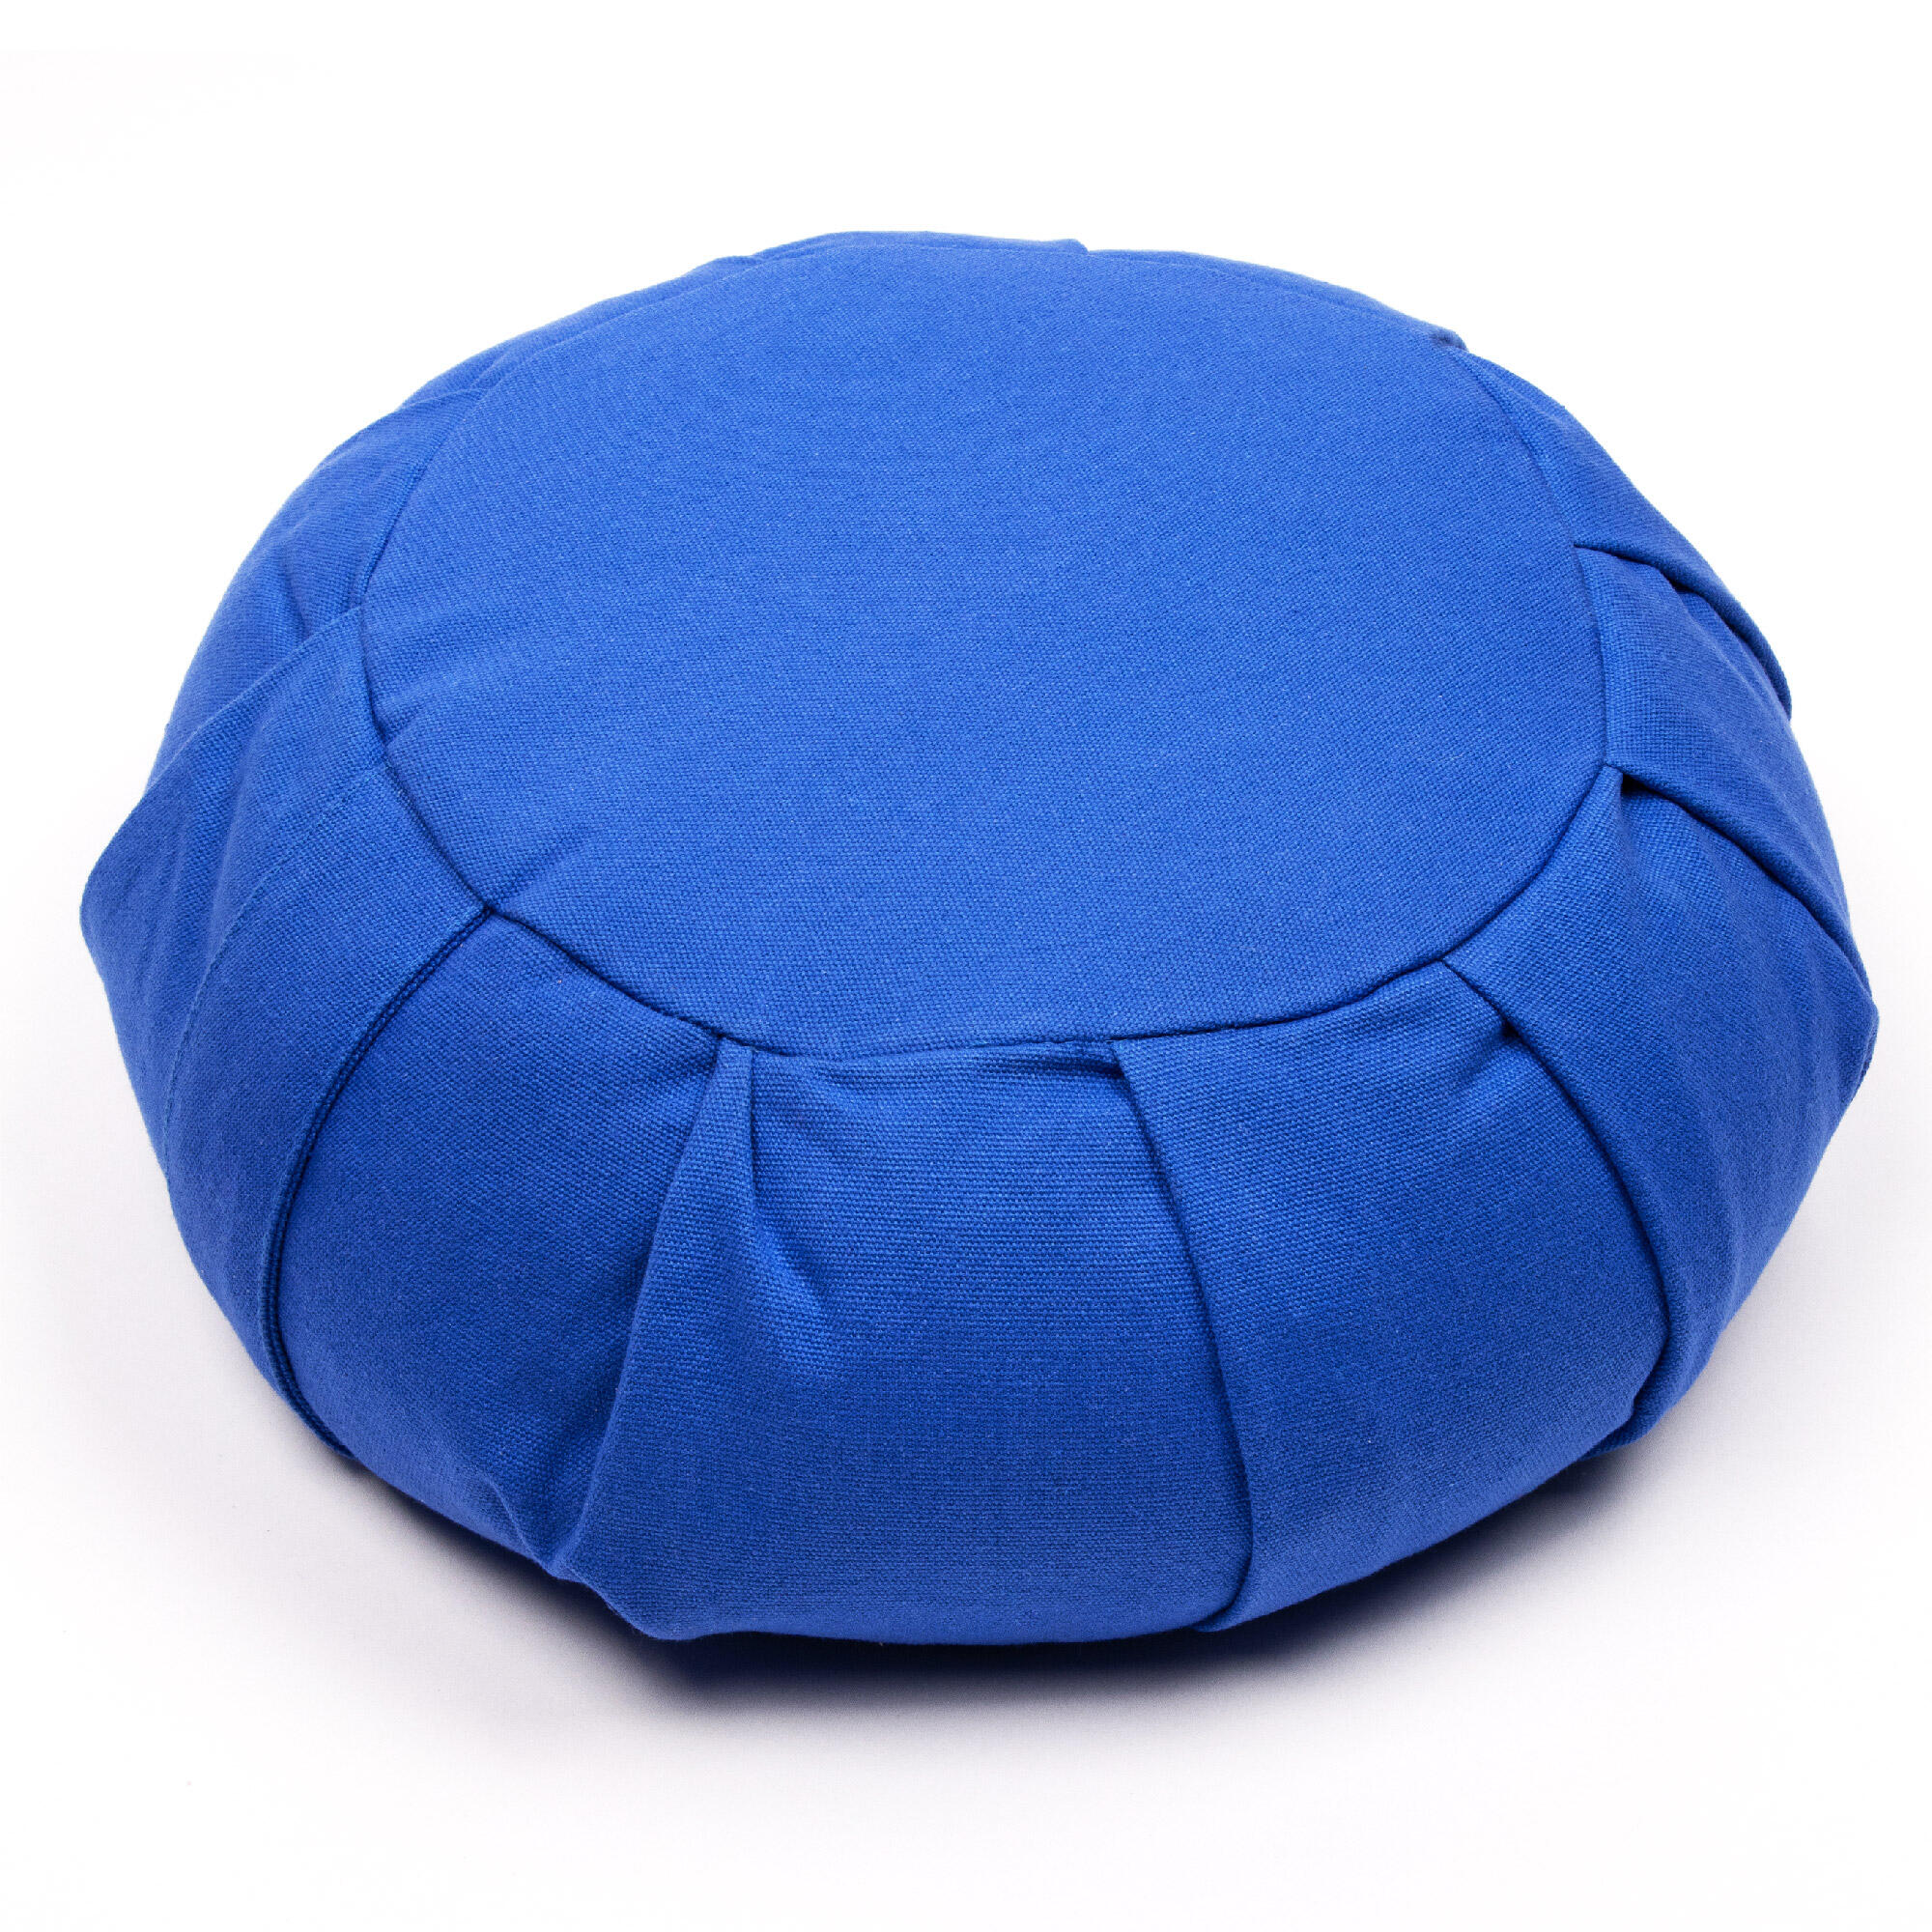 Myga Zafu Meditation Cushion - Blue 1/8